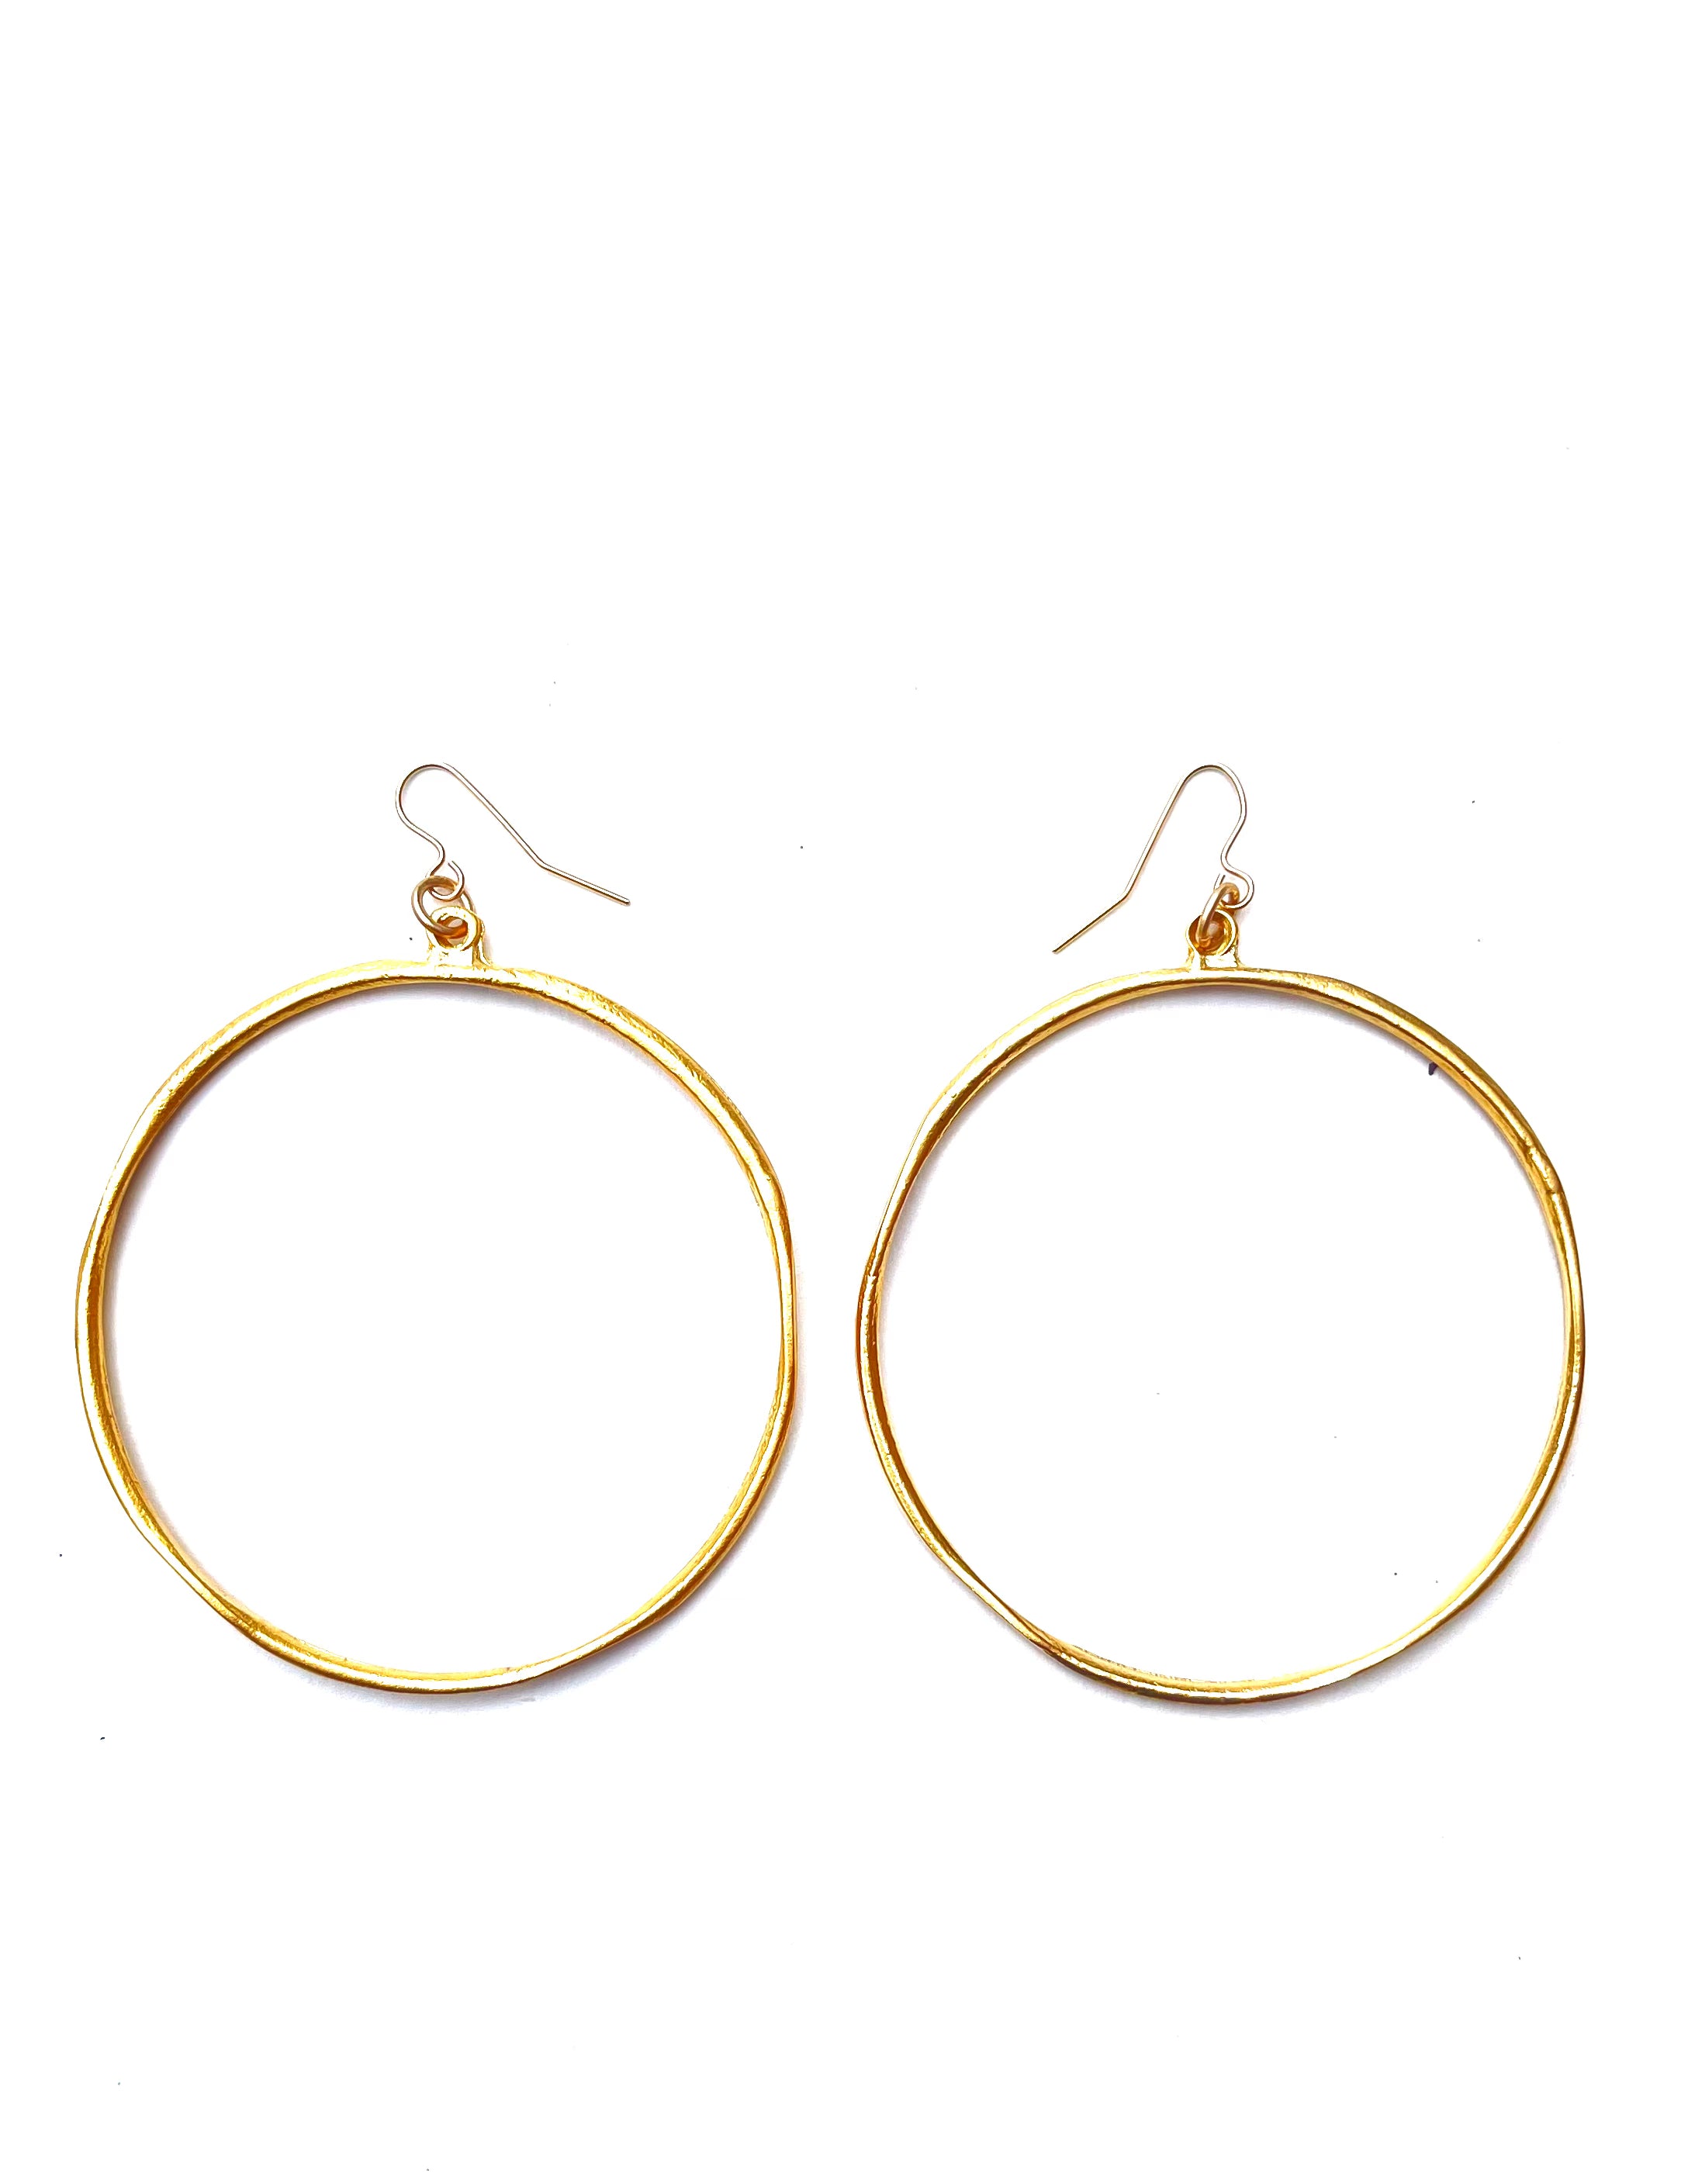 Boho - large hoop earrings